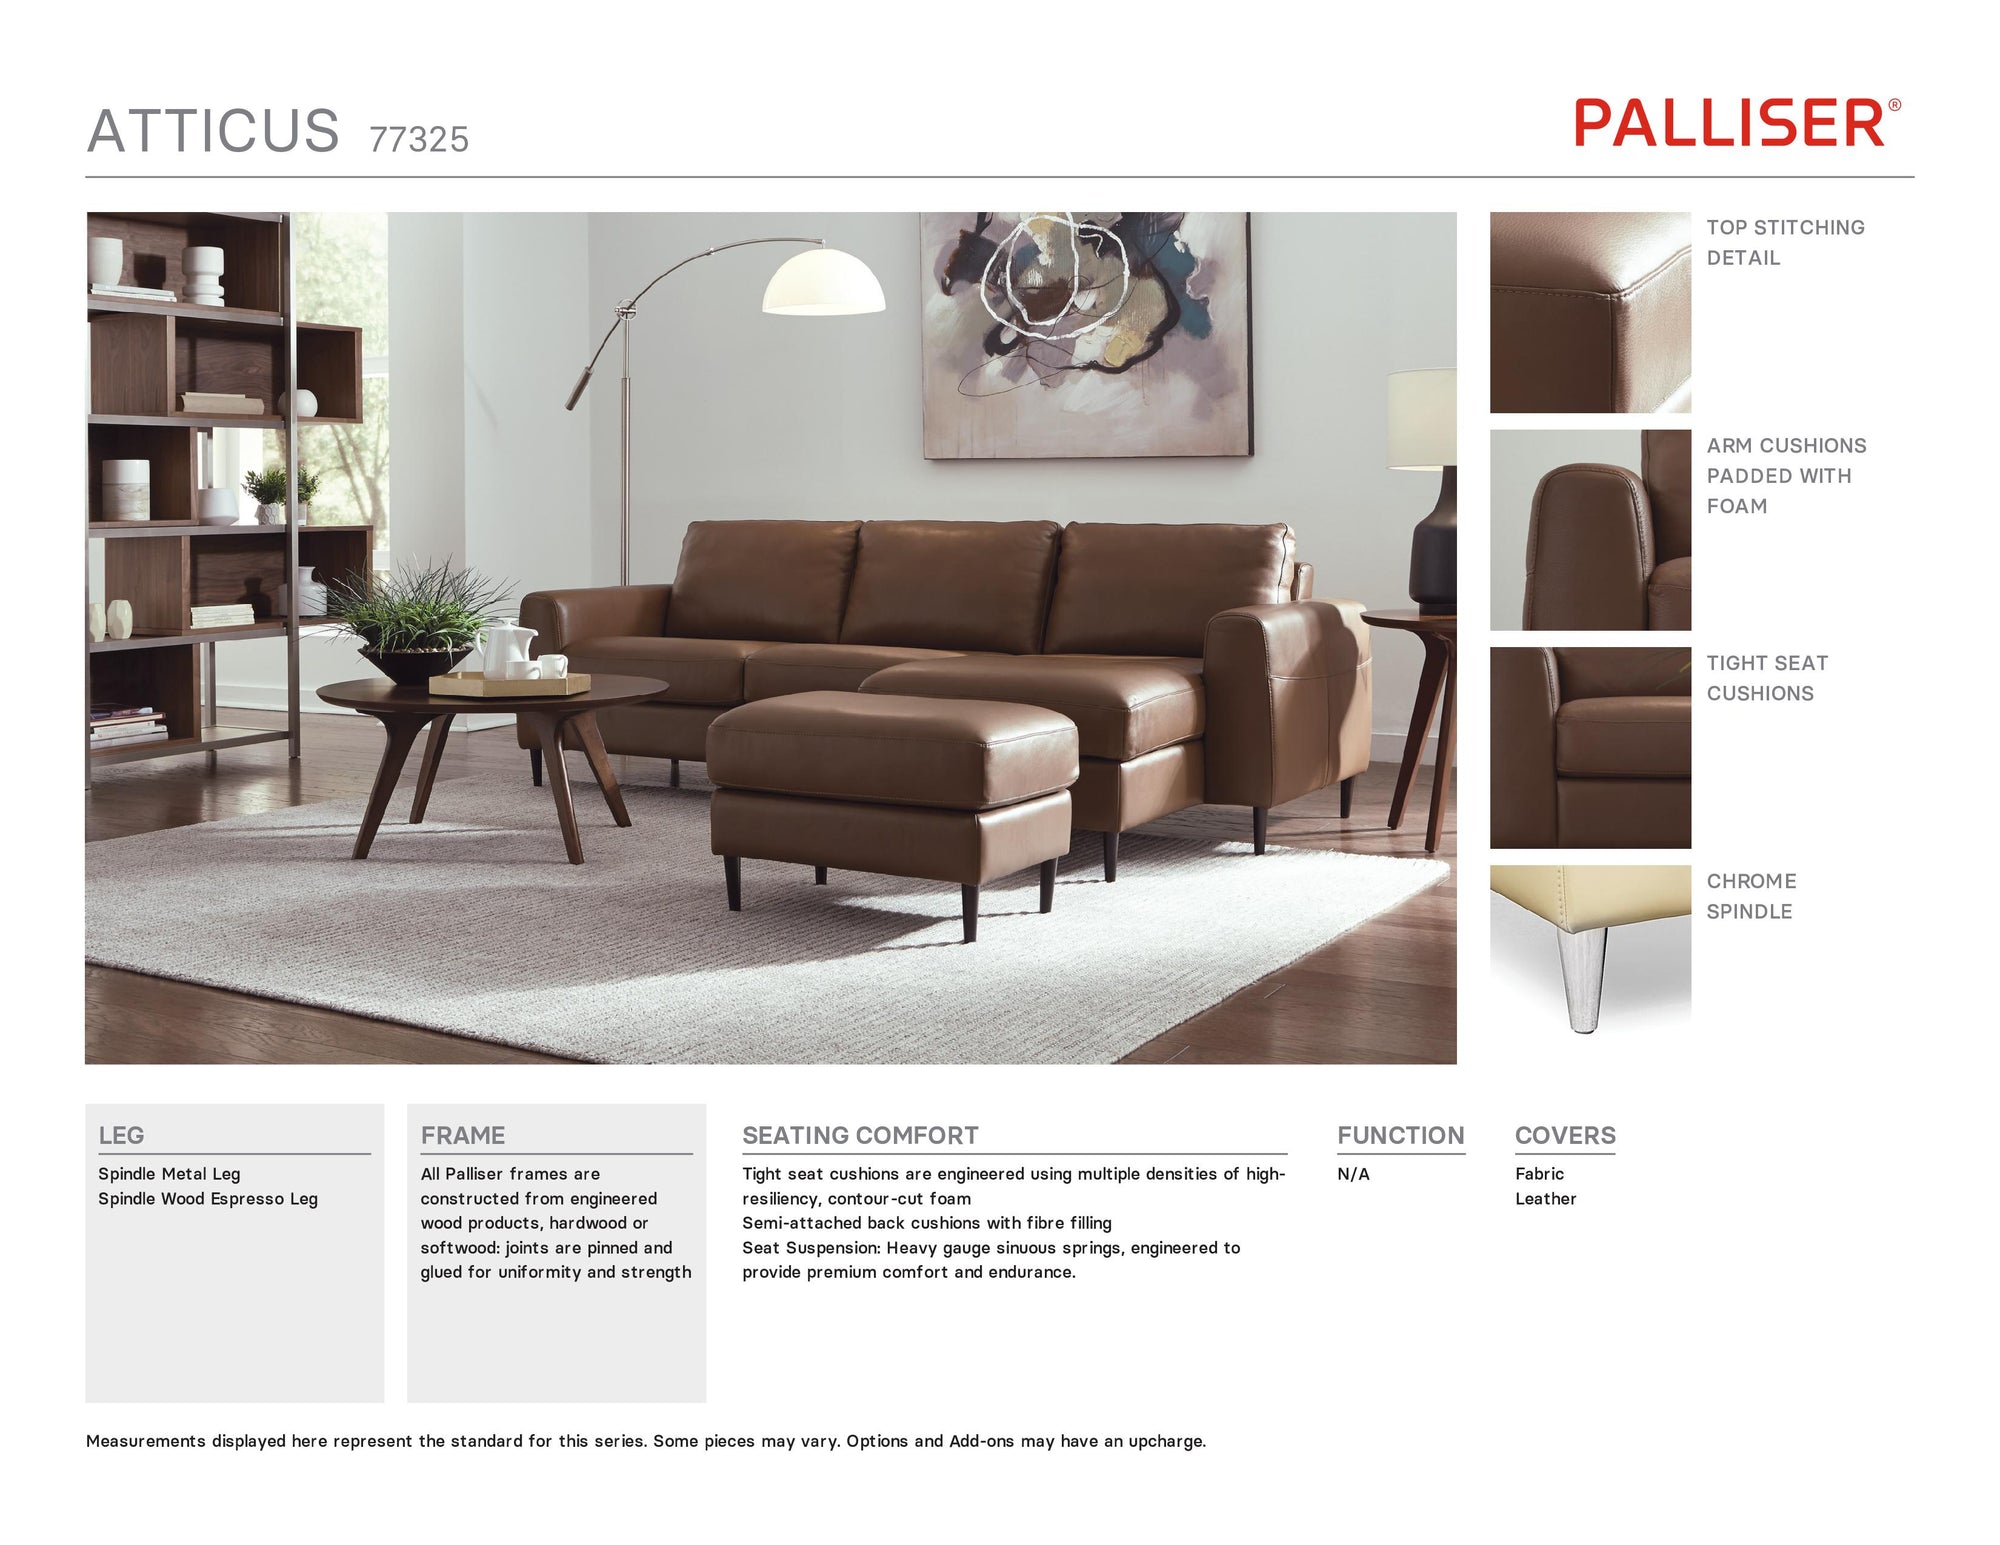 Palliser Atticus Sofa 77325 - Leather Furniture